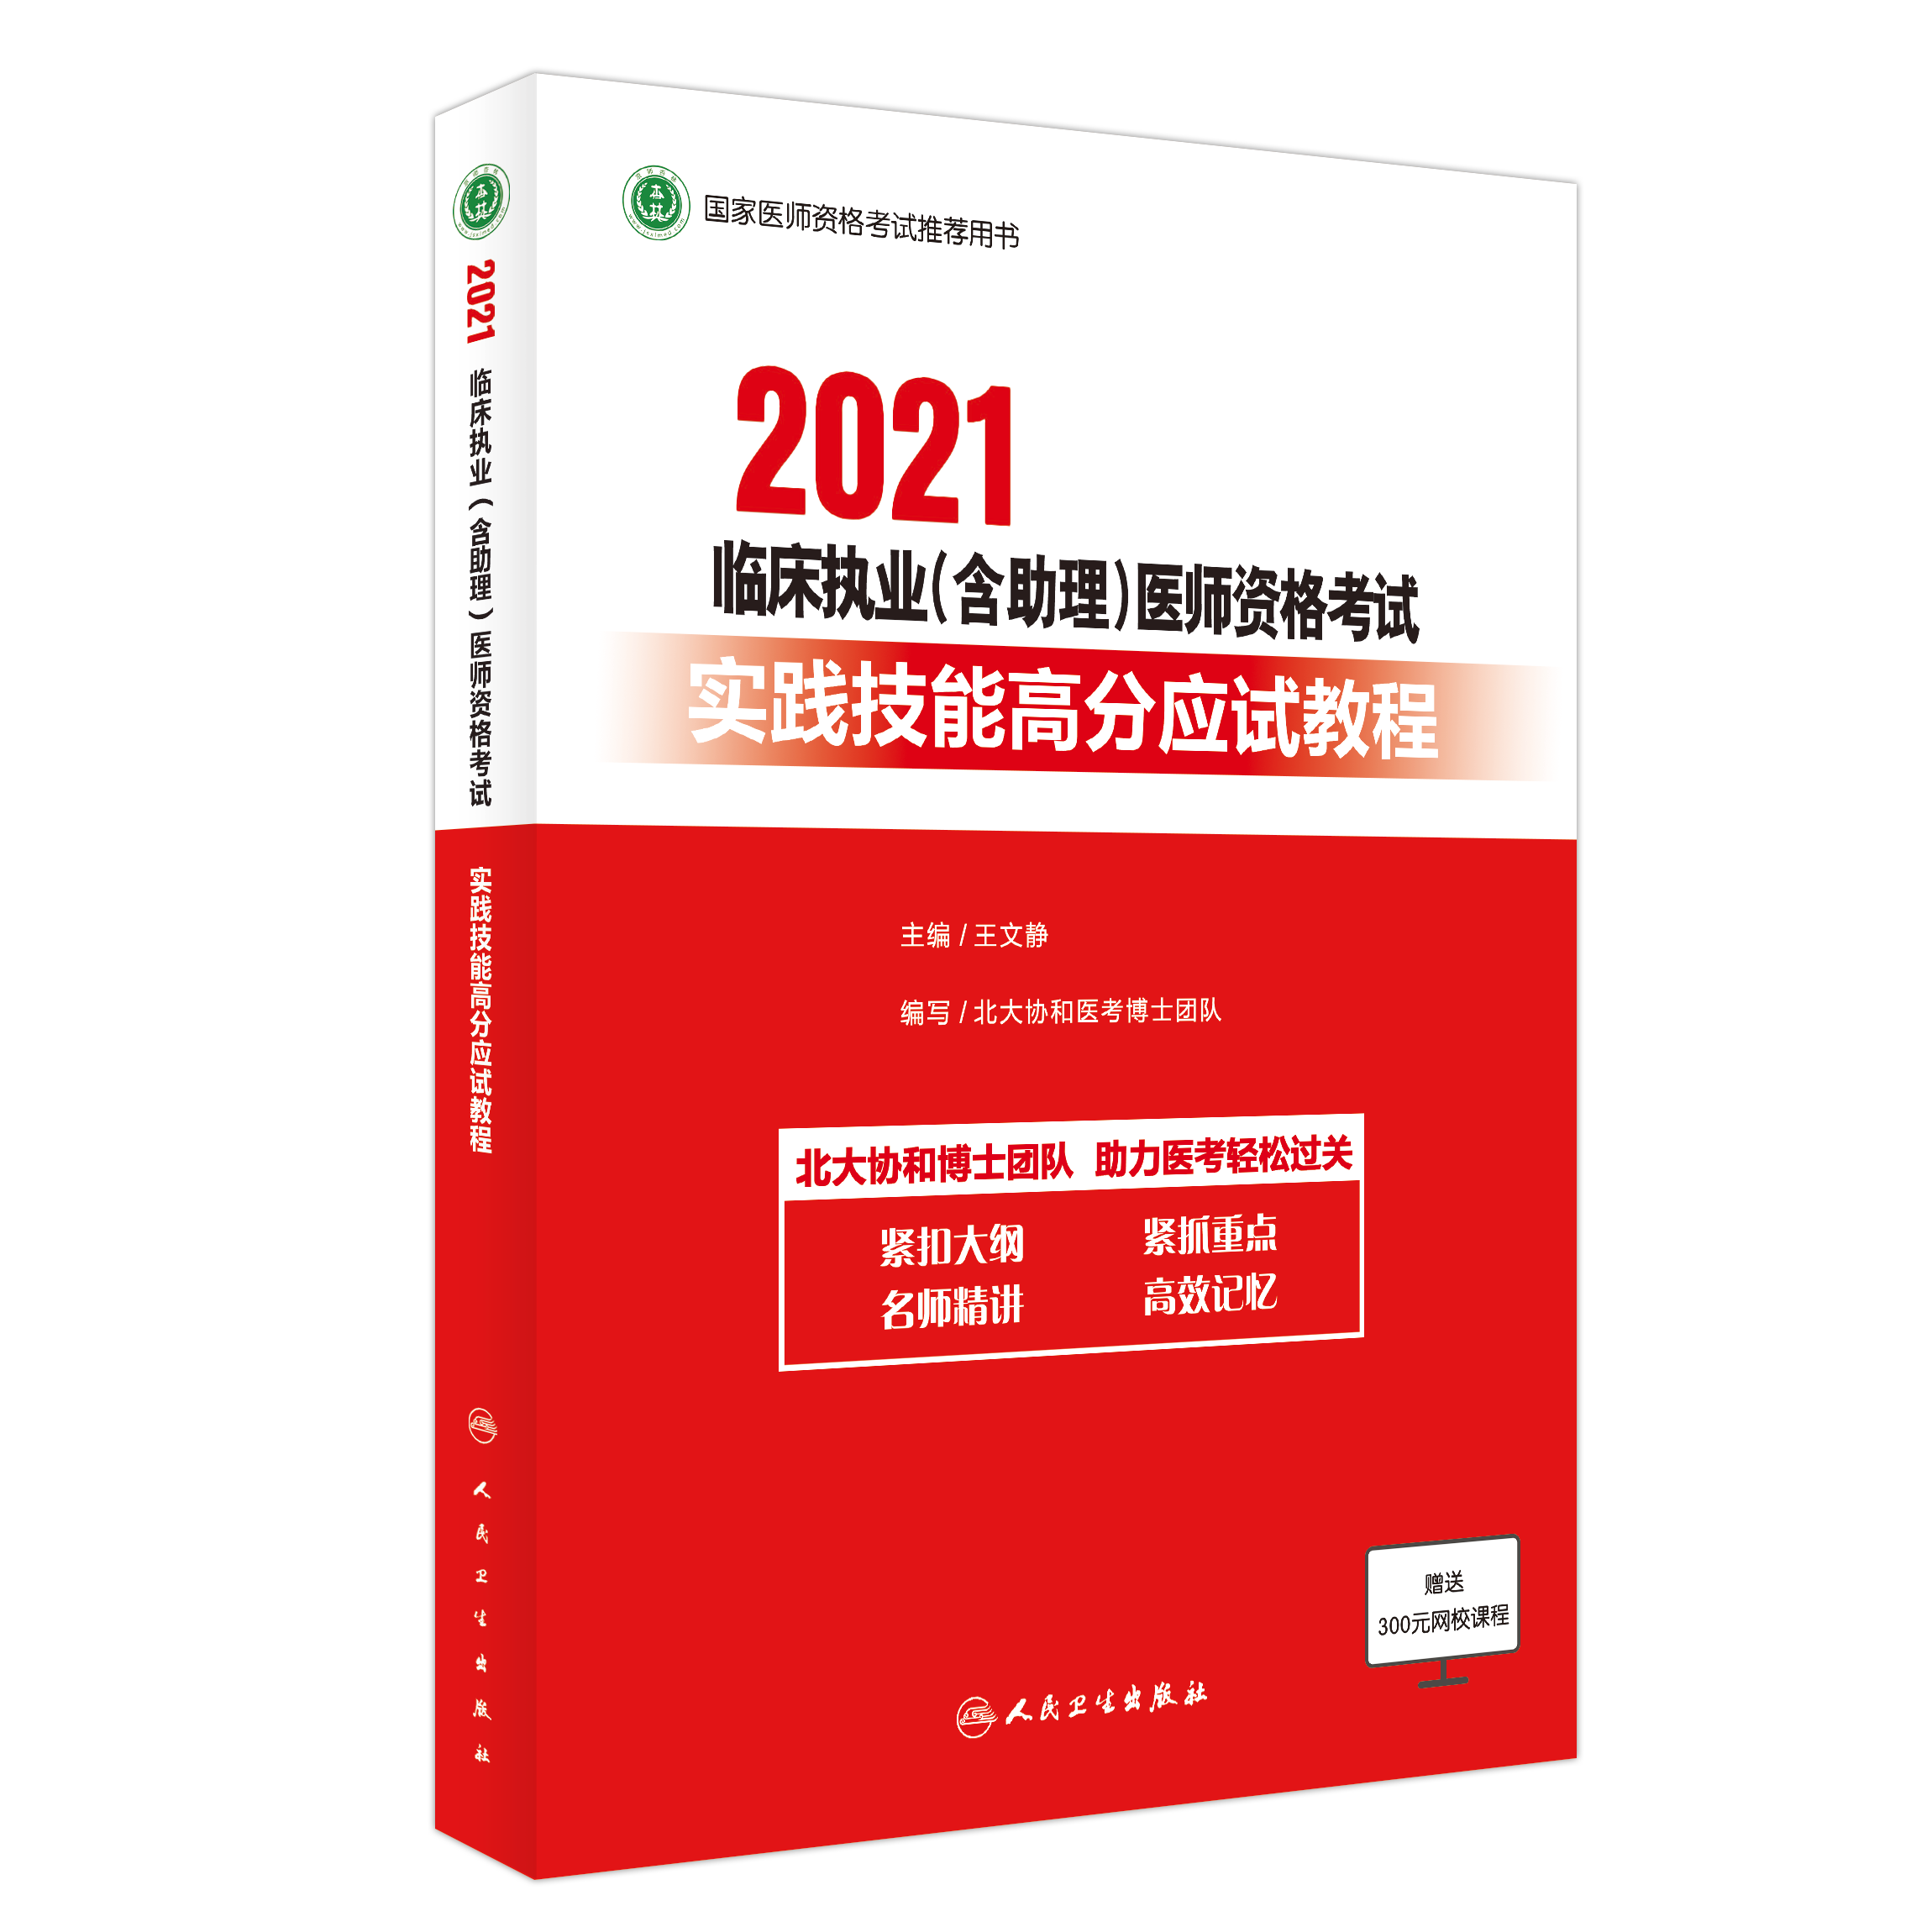 【预售】2021临床执业（含助理）医师资格考试综合笔试高分指南+实践技能应试教程